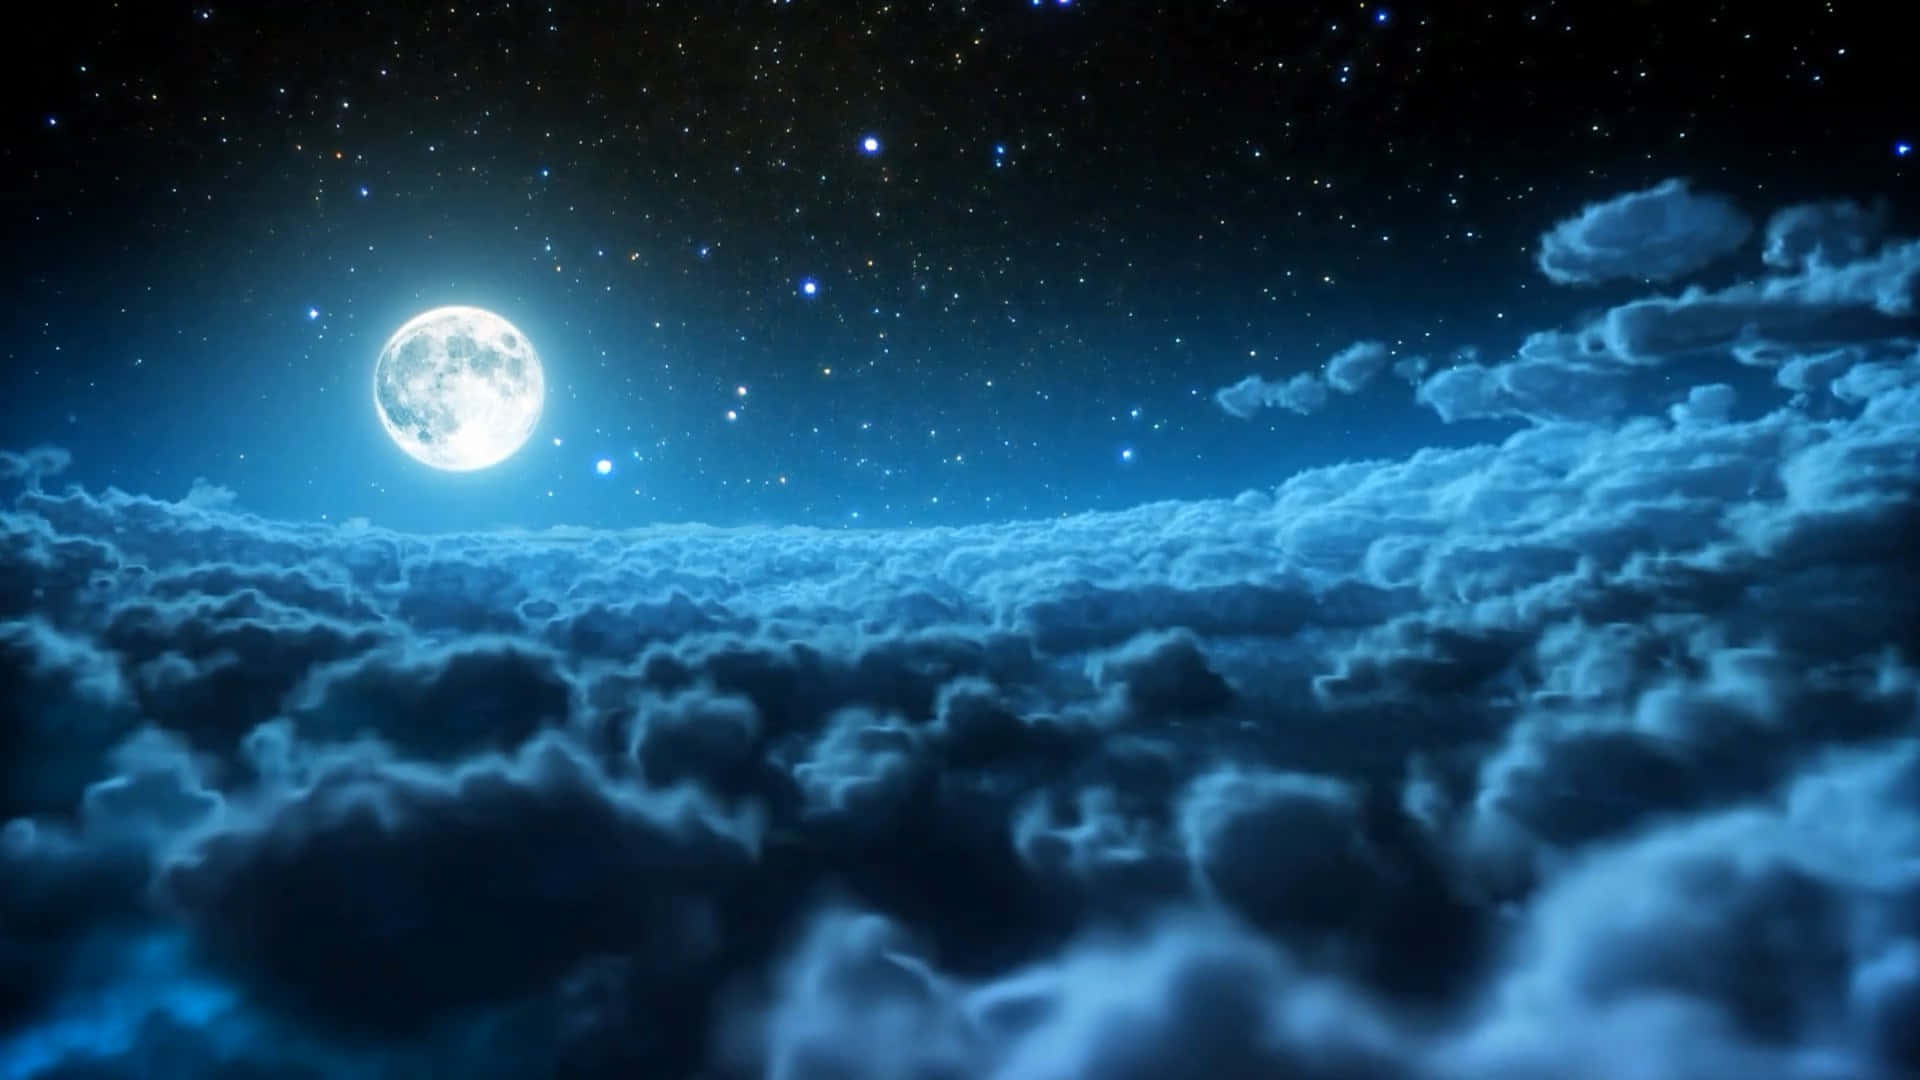 Beundrden Storslåede Nattehimmel.